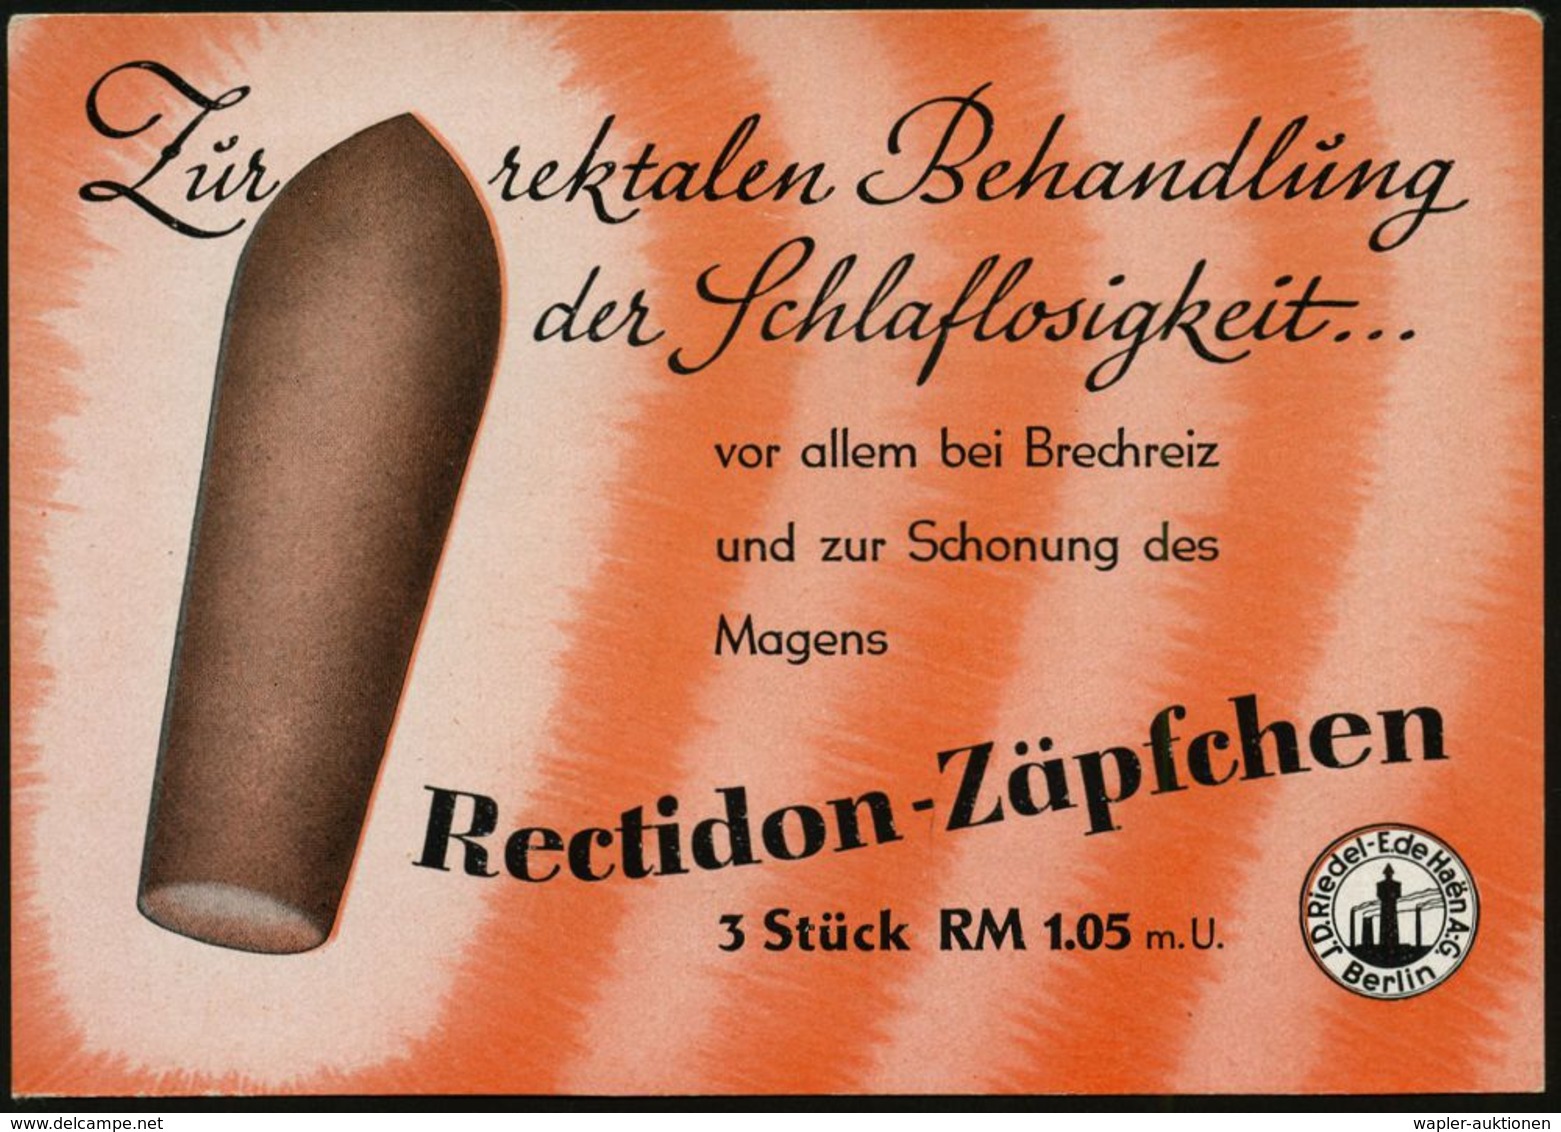 BERLIN-BRITZ 1/ Ceadon/ Ein Natürliches/ Stuhlregelungsmittel.. 1942 (28.9.) AFS Auf Reklame-Ak.: Recidon-Zäpfchen.. (Re - Médecine